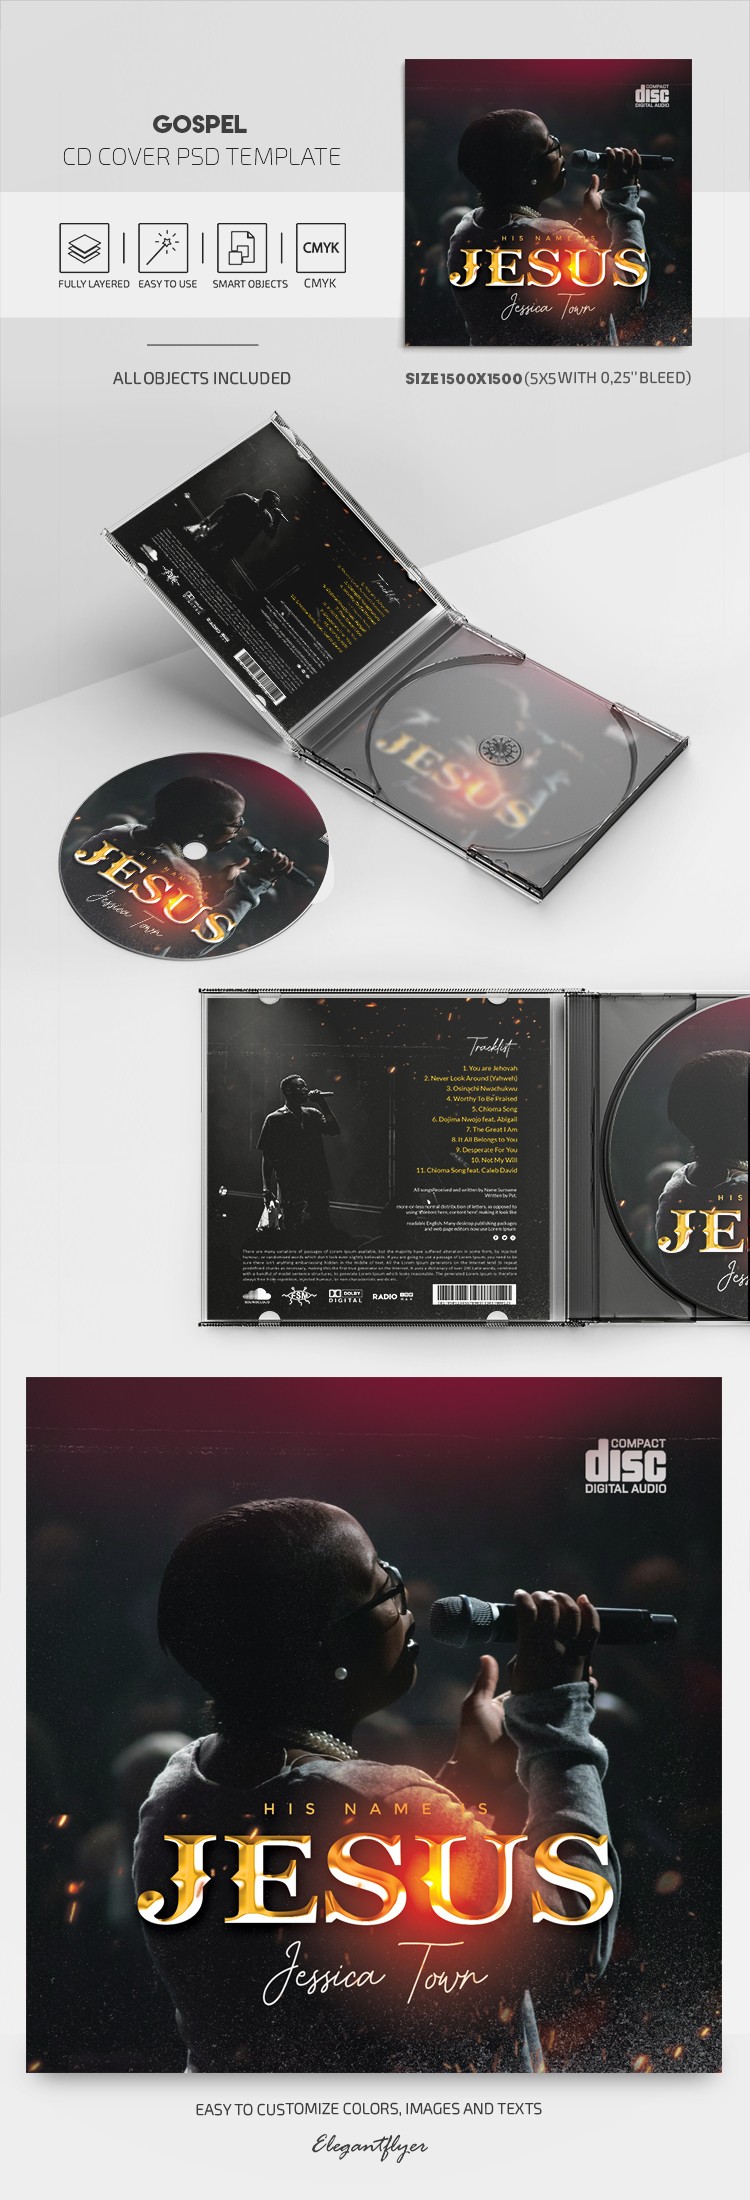 Couverture de CD d'Évangile by ElegantFlyer